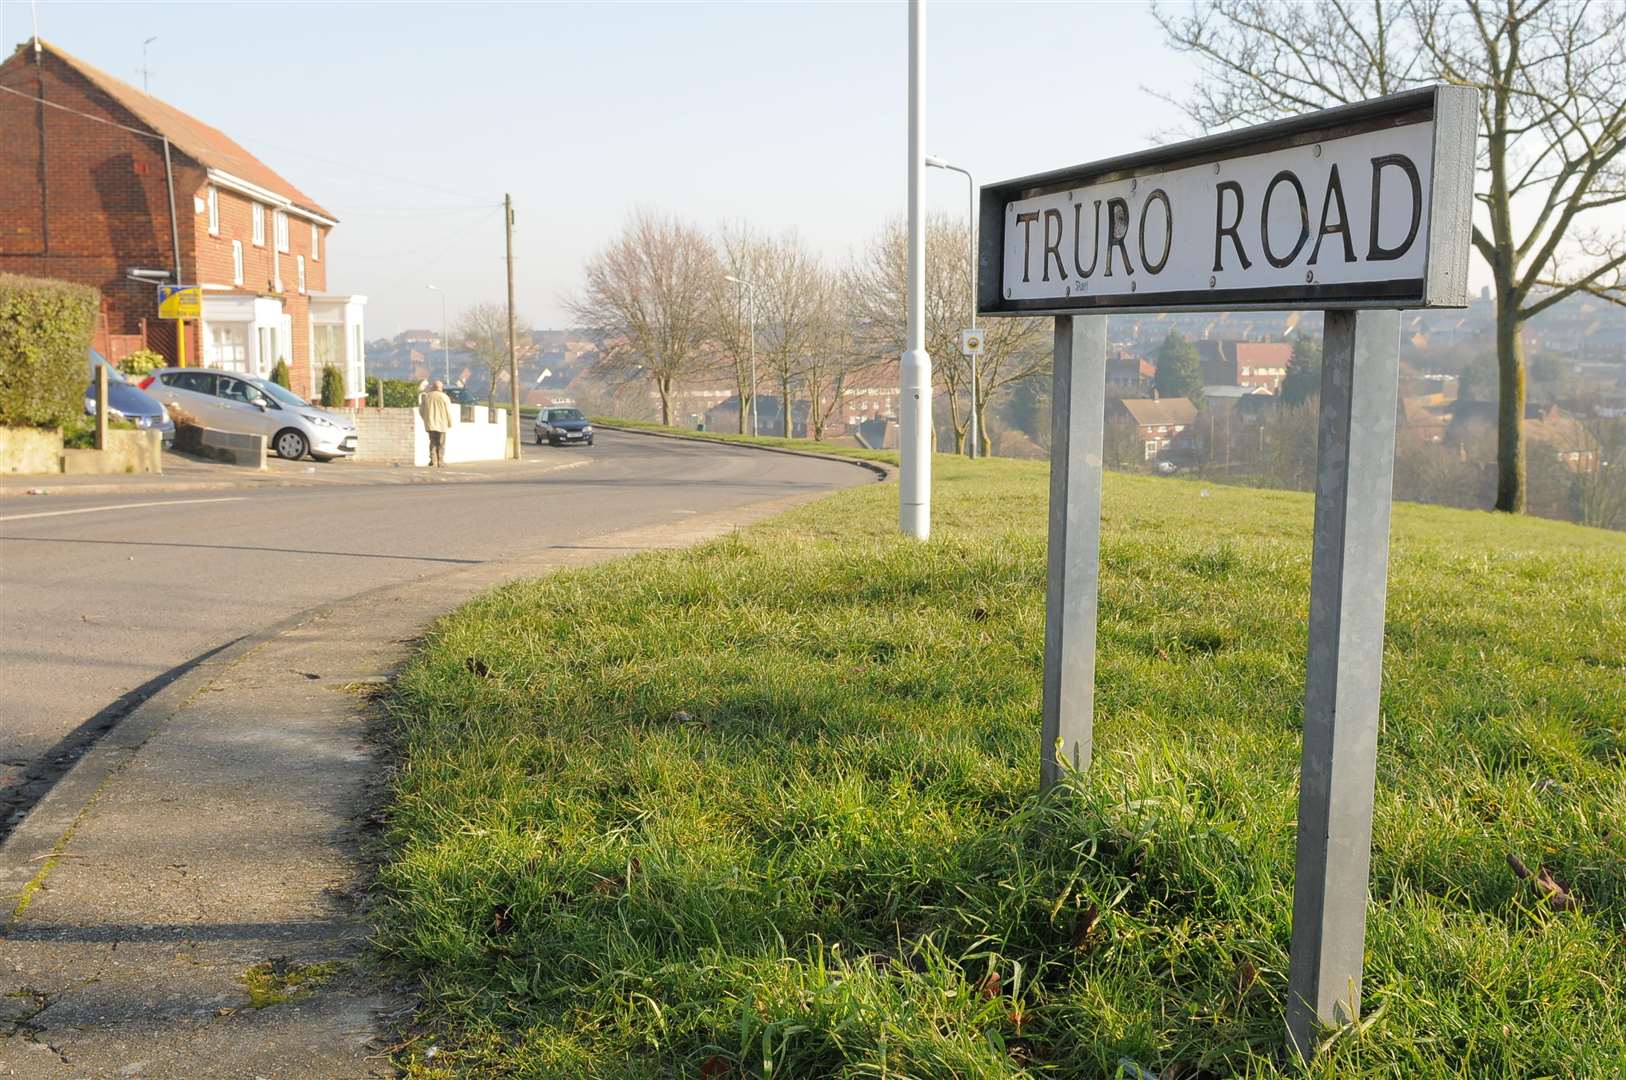 Truro Road in Gravesend